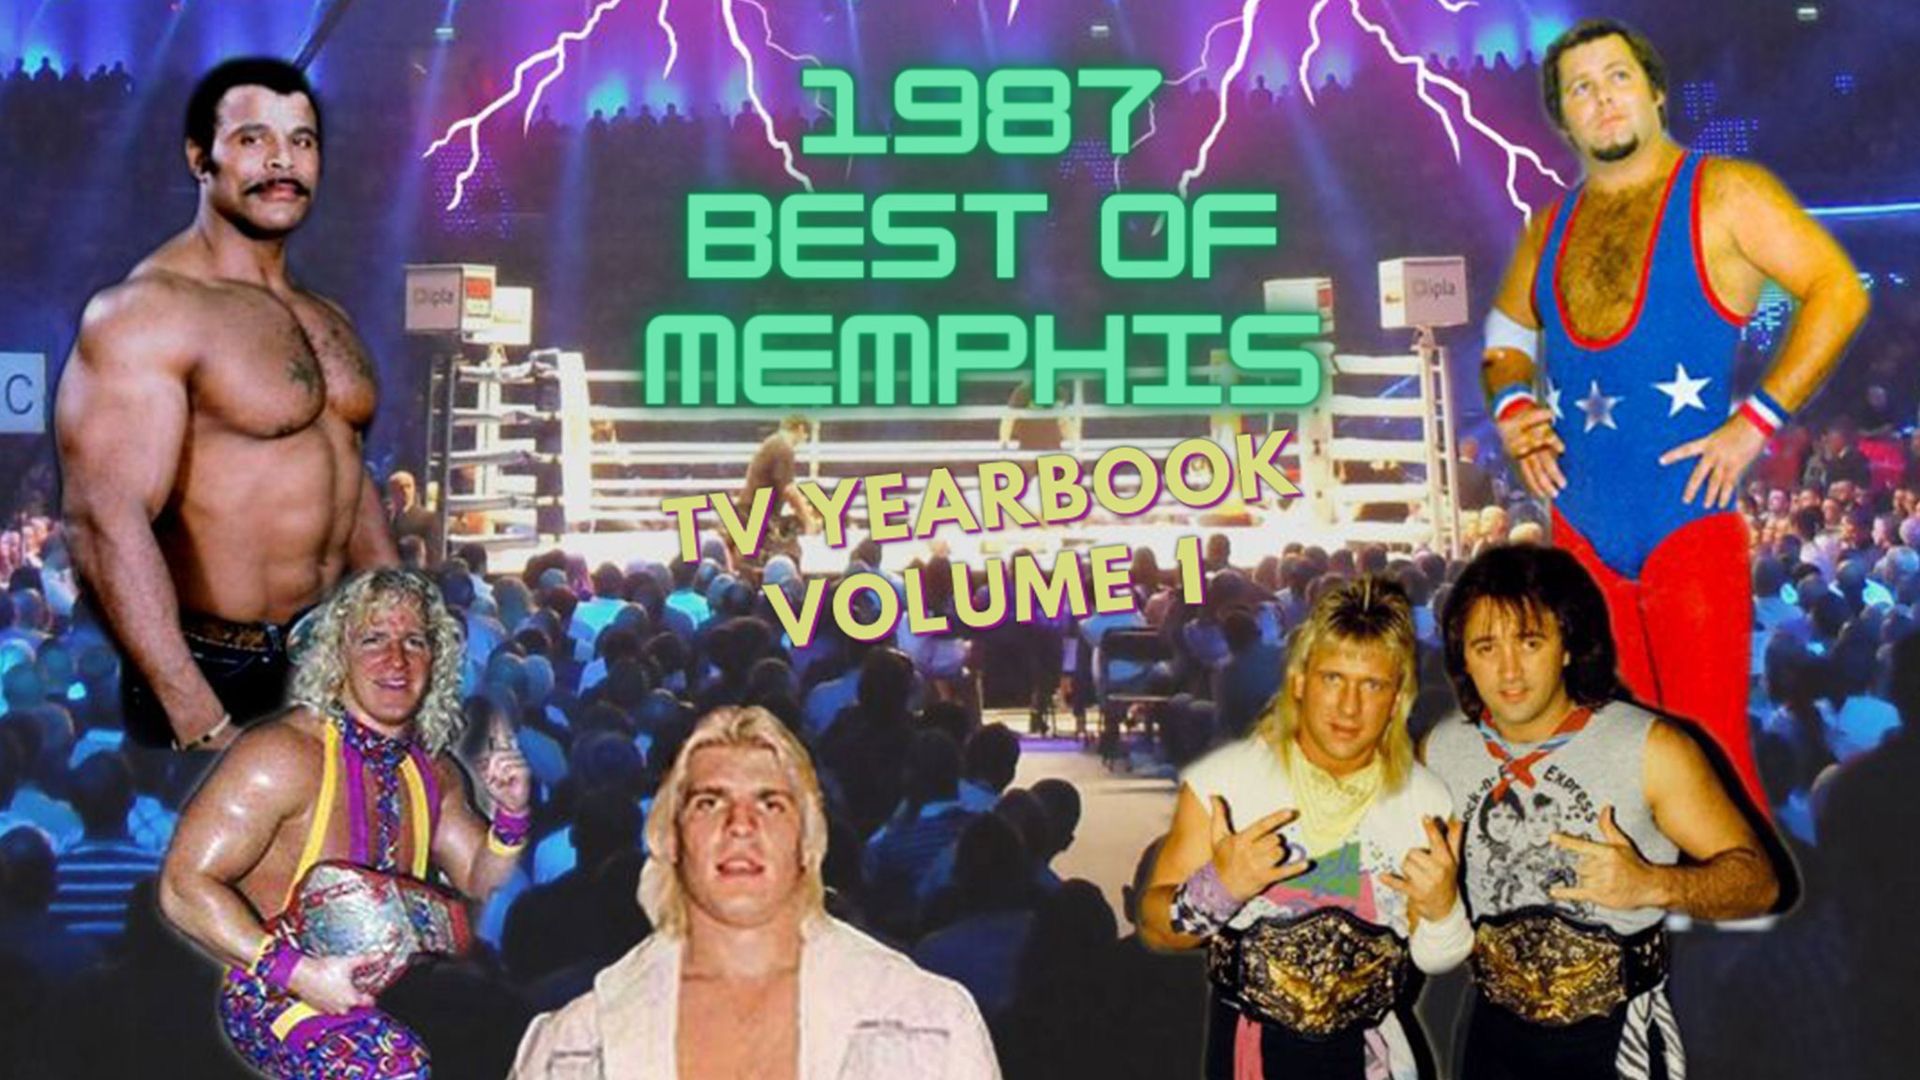 1987 Best of Memphis TV Yearbook Volume 1 Backdrop